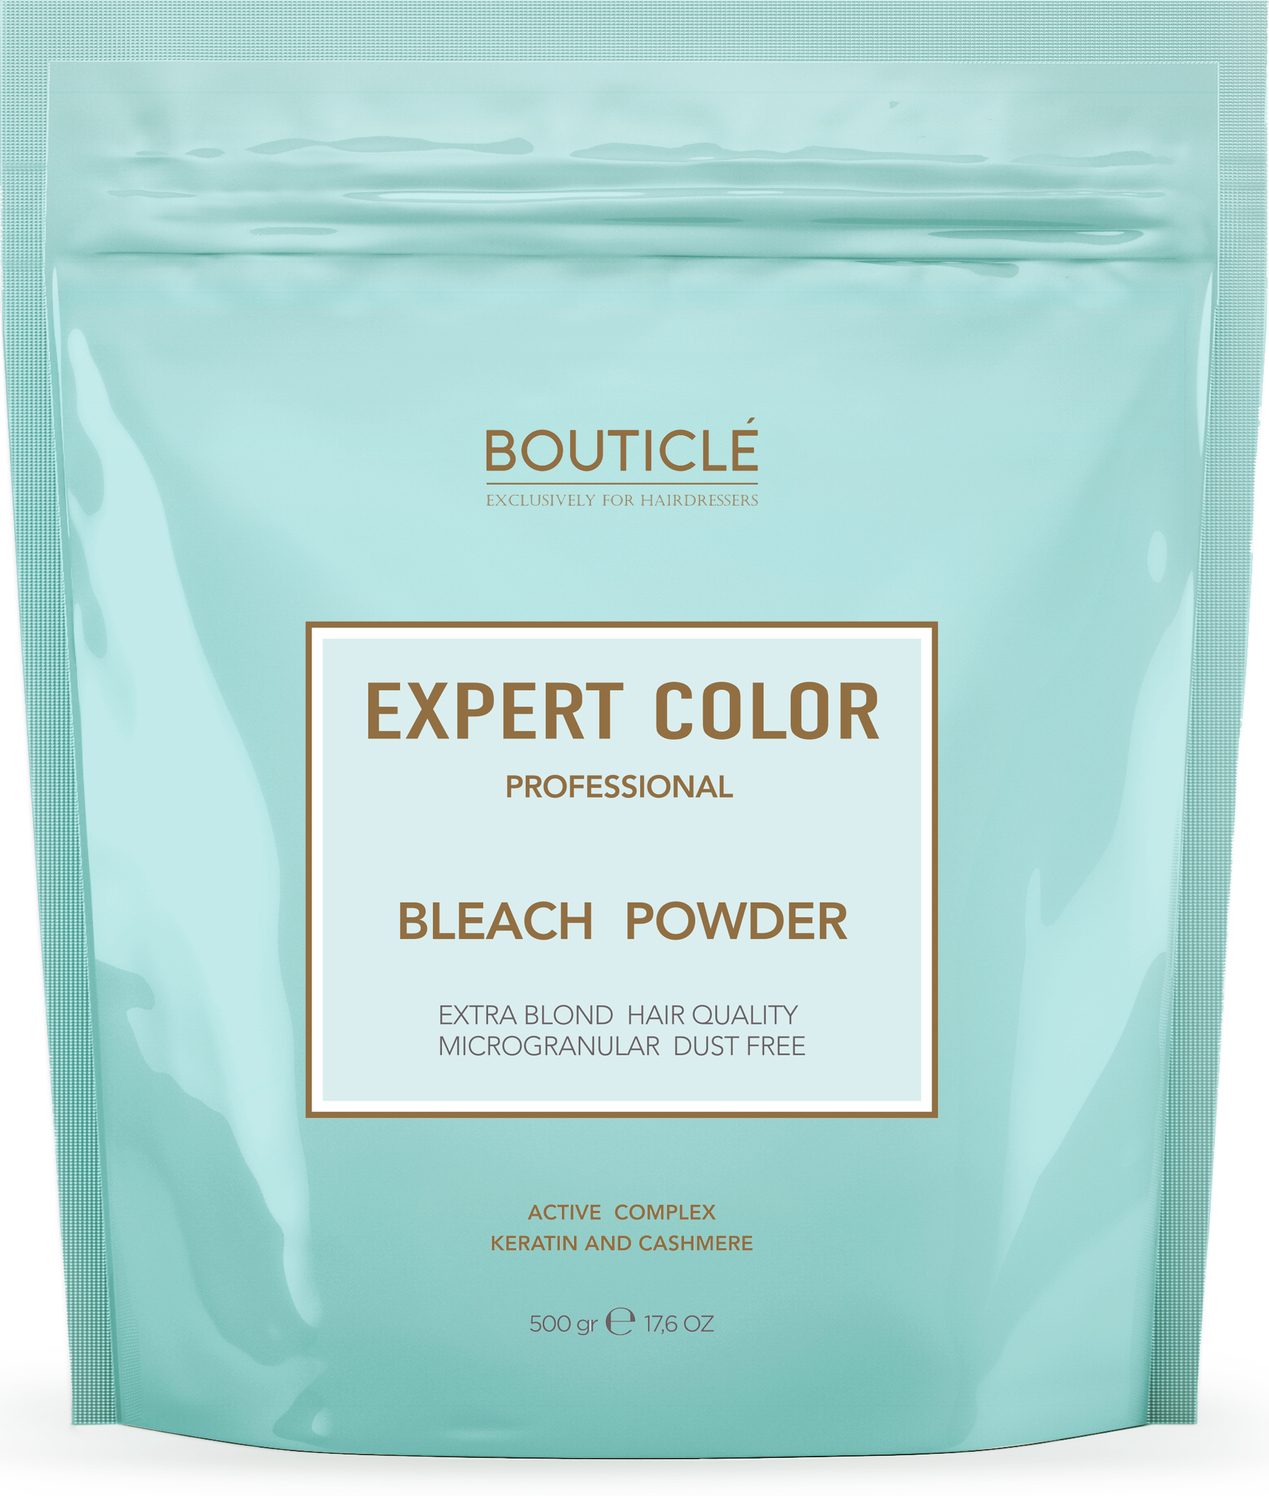 Bouticle bleach powder